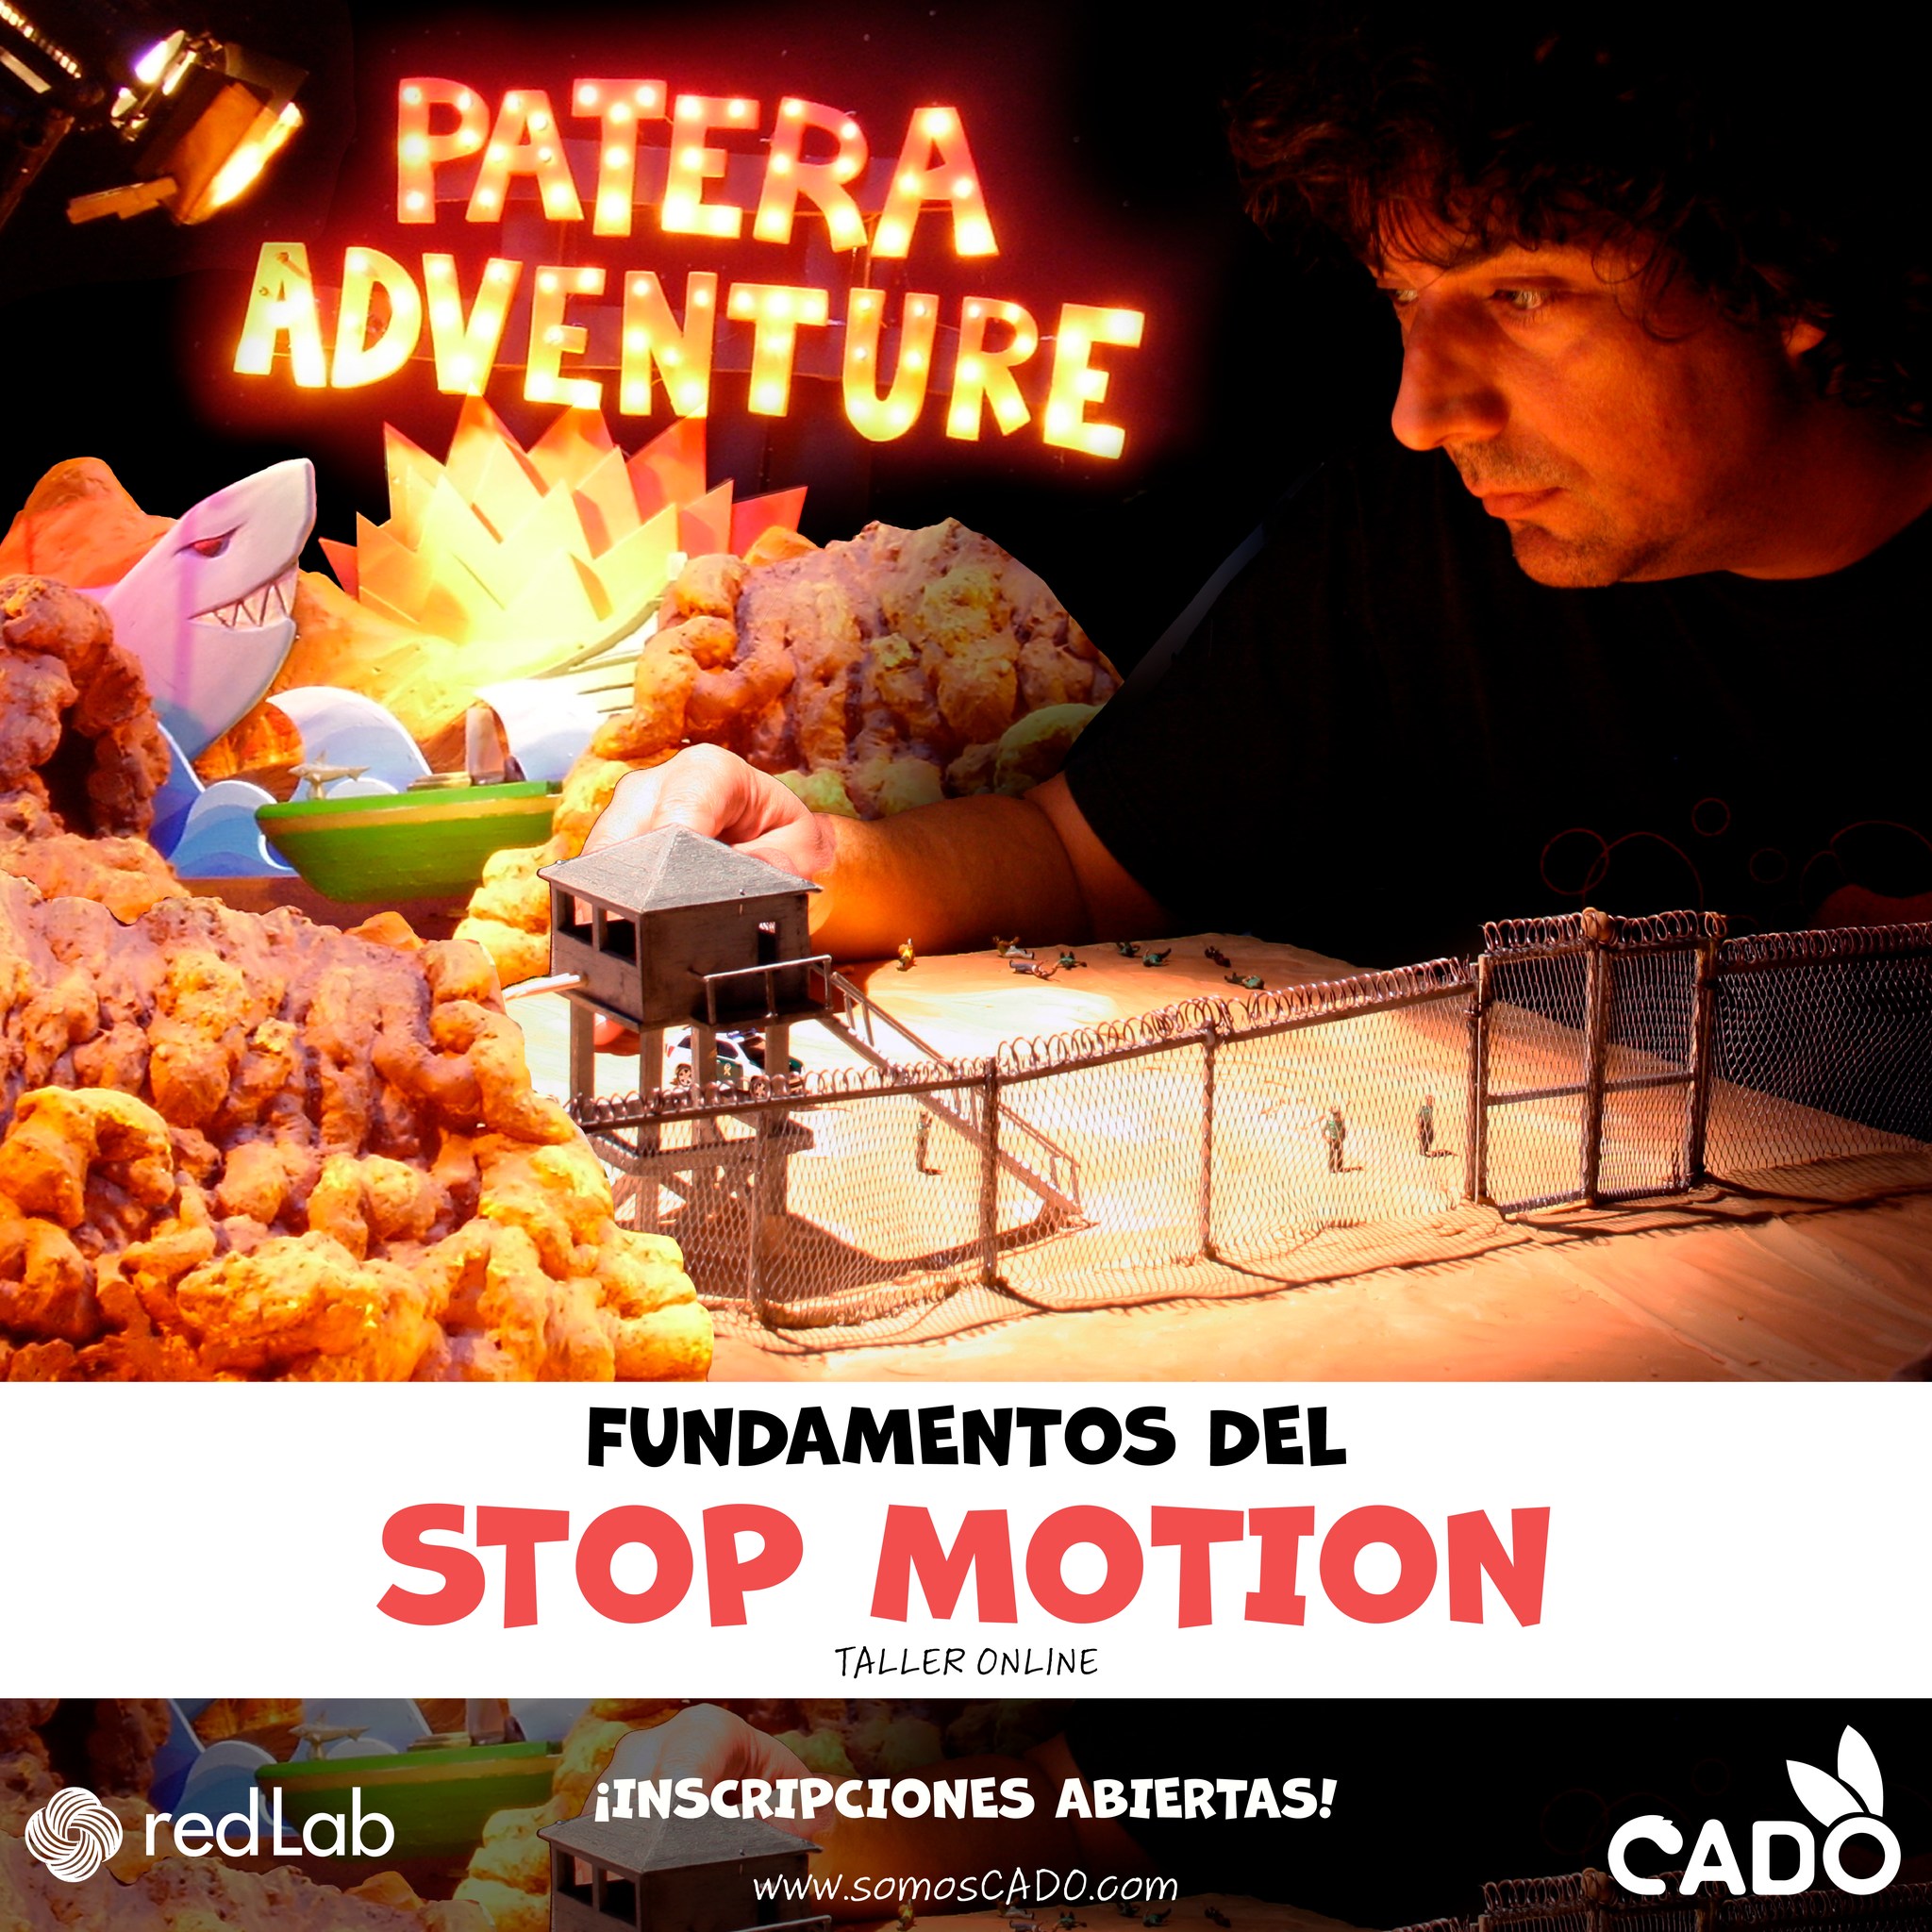 Comunidad educativa “CADO” impartirá taller online sobre animación Stop Motion